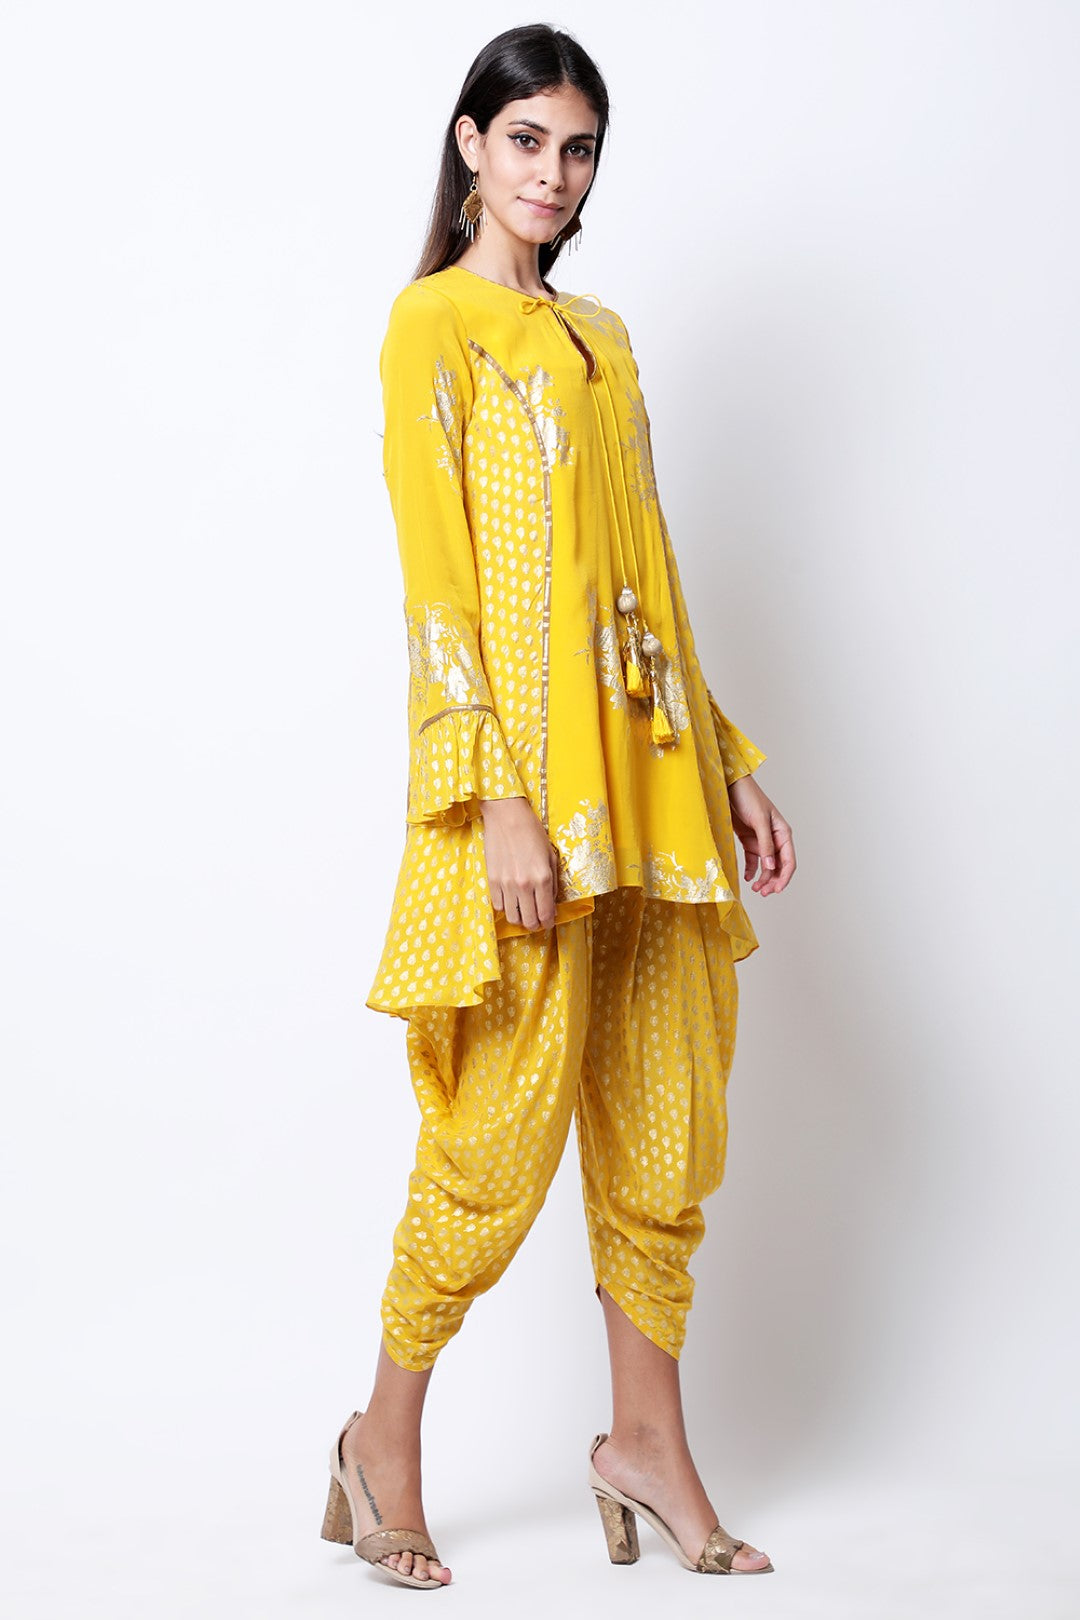 Pitambari Yellow gold printed bibi badal asymmetric tunic with cowl dhoti.